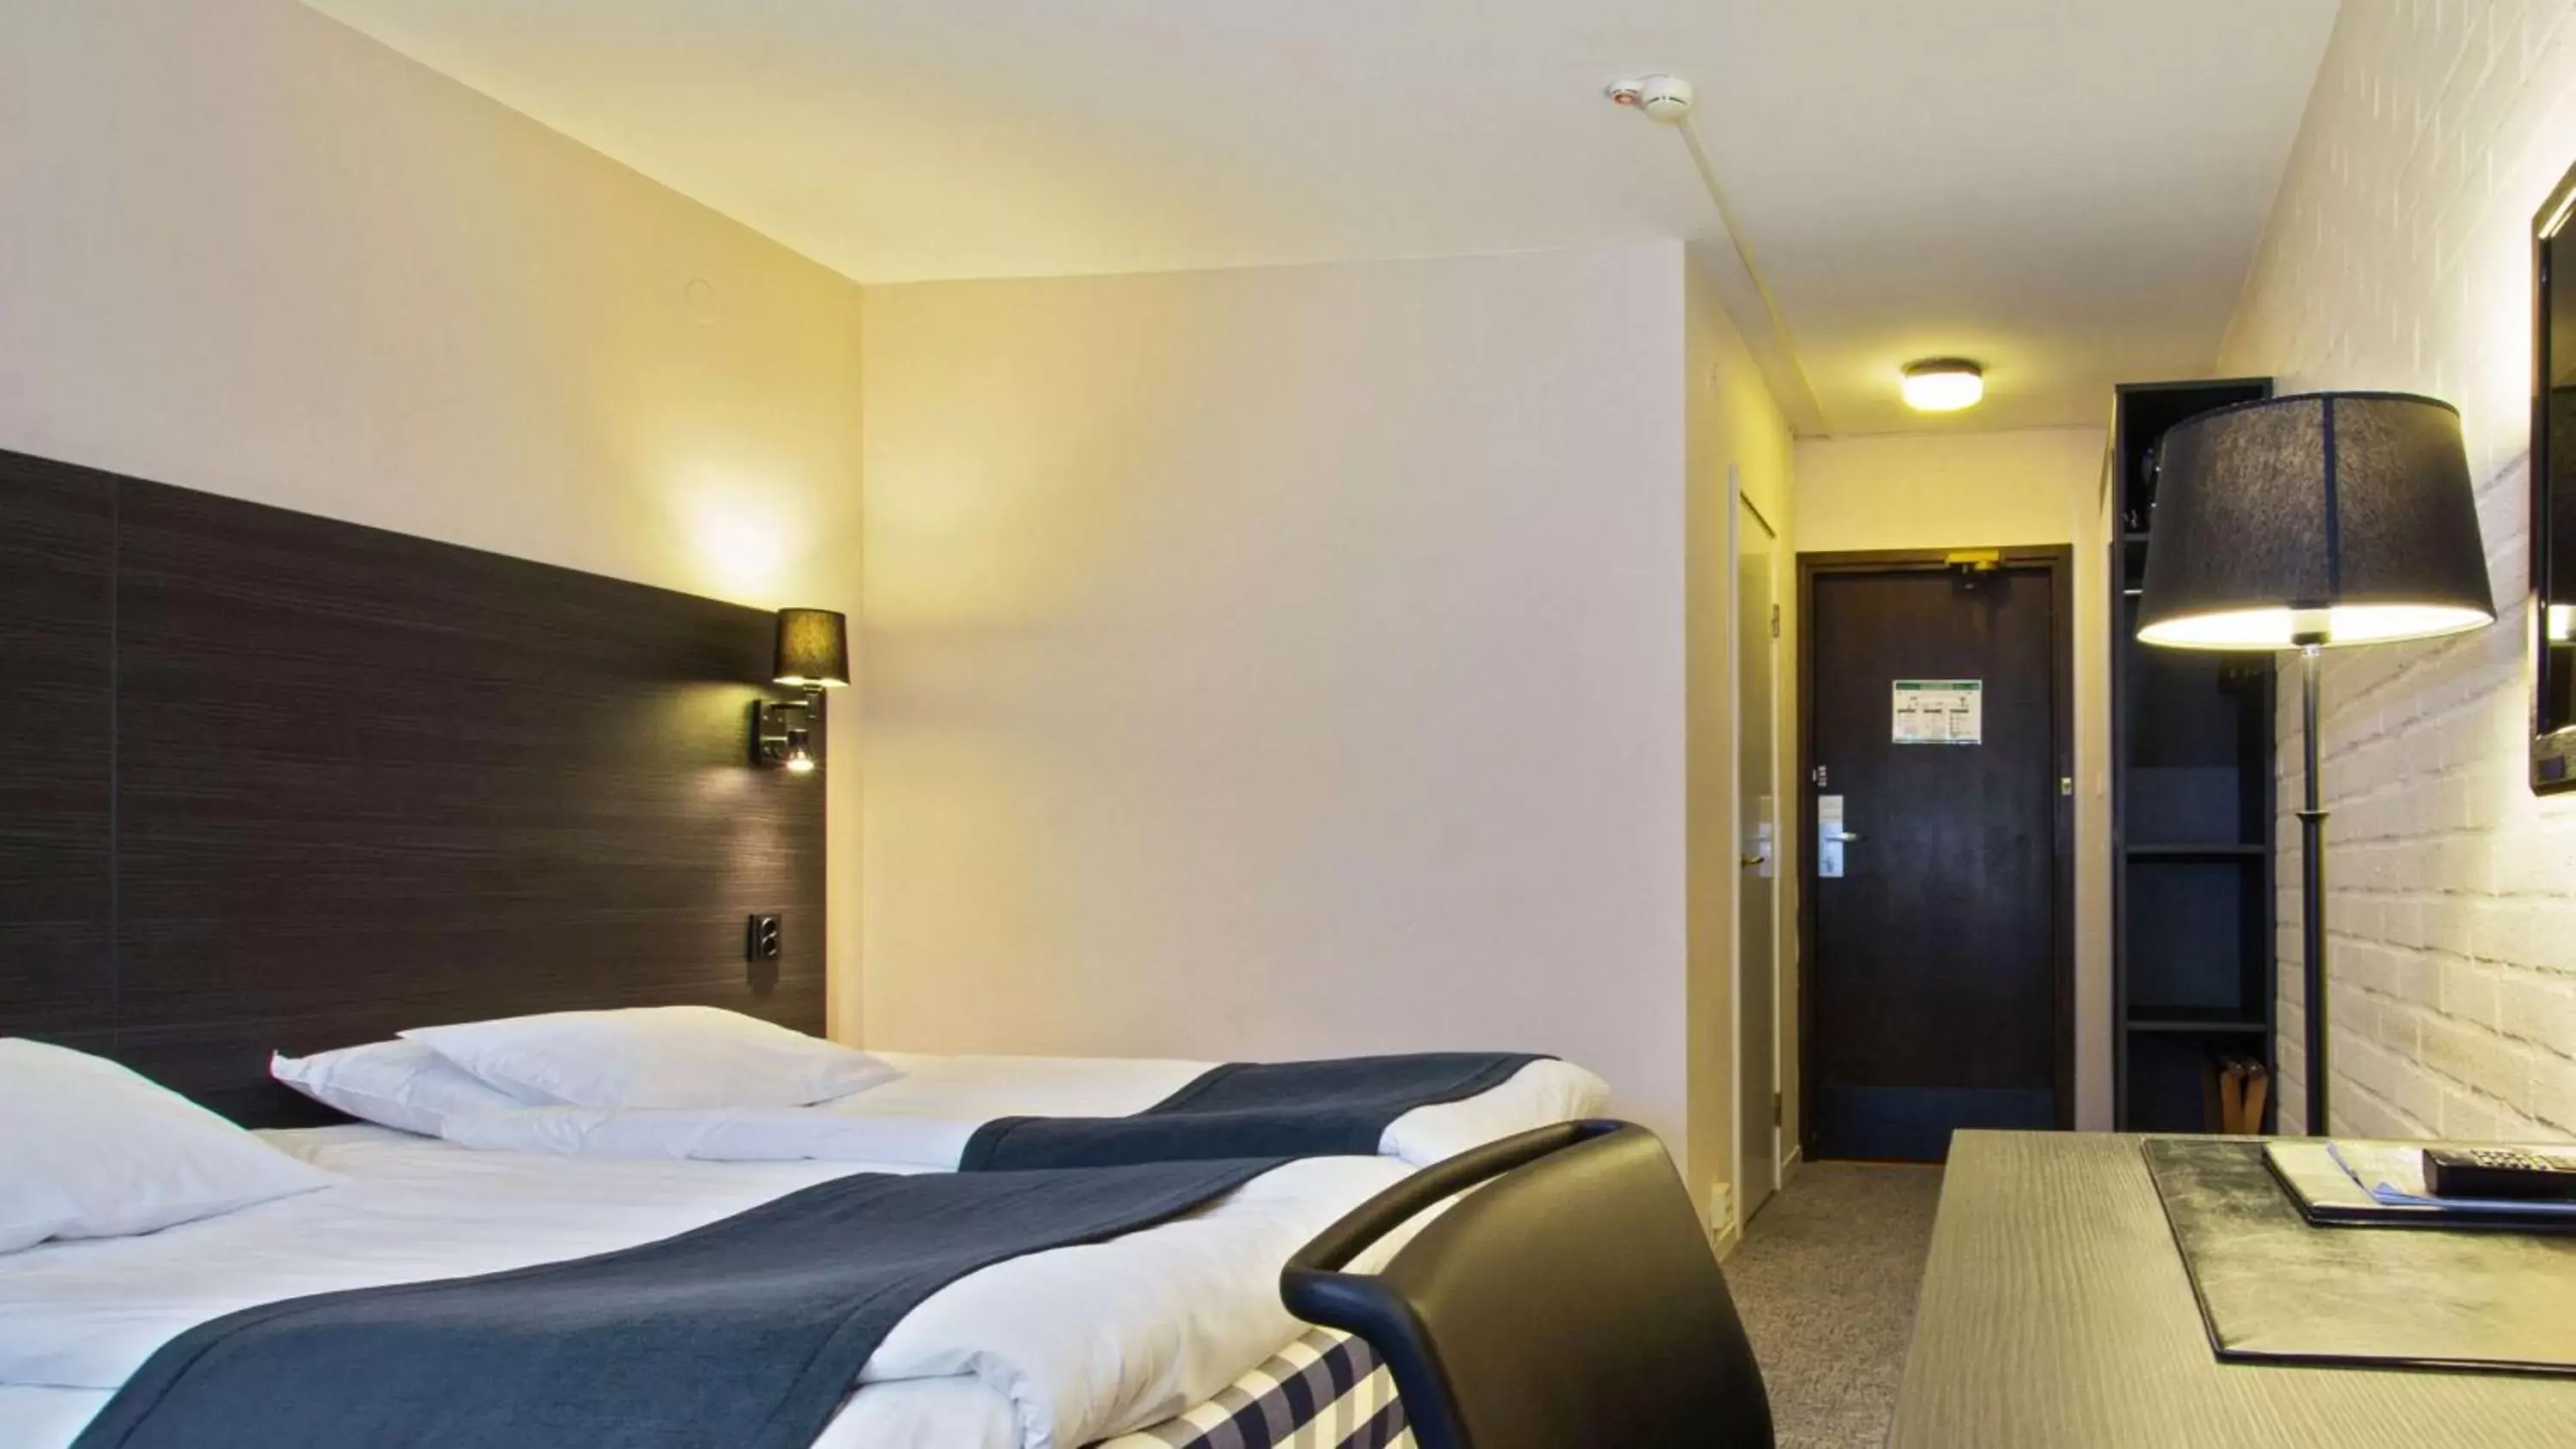 Bedroom, Bed in Best Western Hotel Scheele